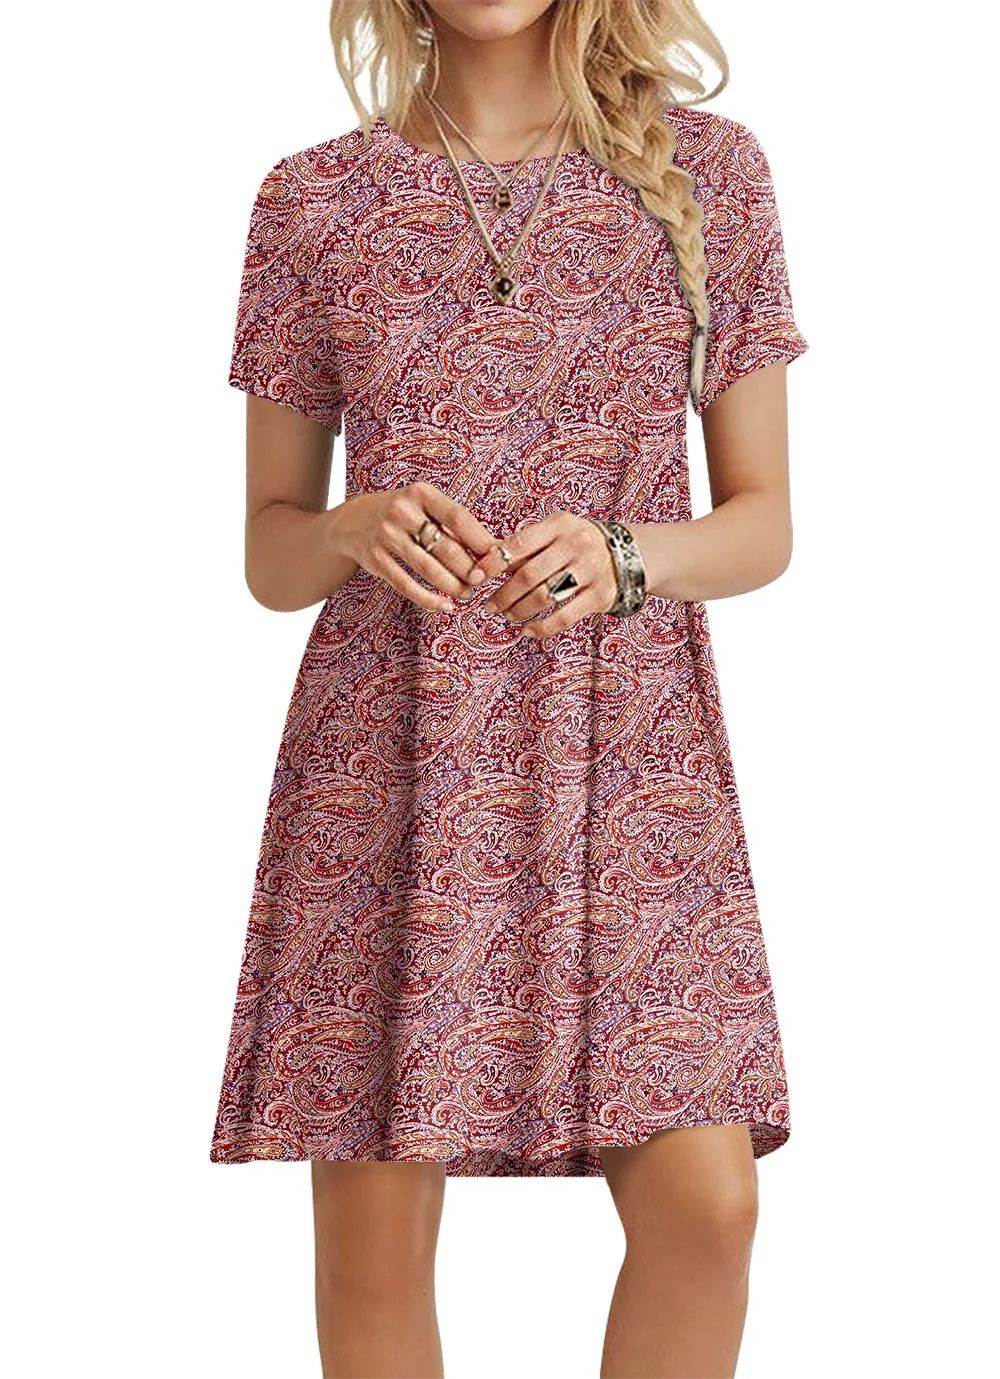 ppyoung Women's Summer Casual T-shirt Dresses Short Sleeve Boho Beach Dress | Walmart (US)